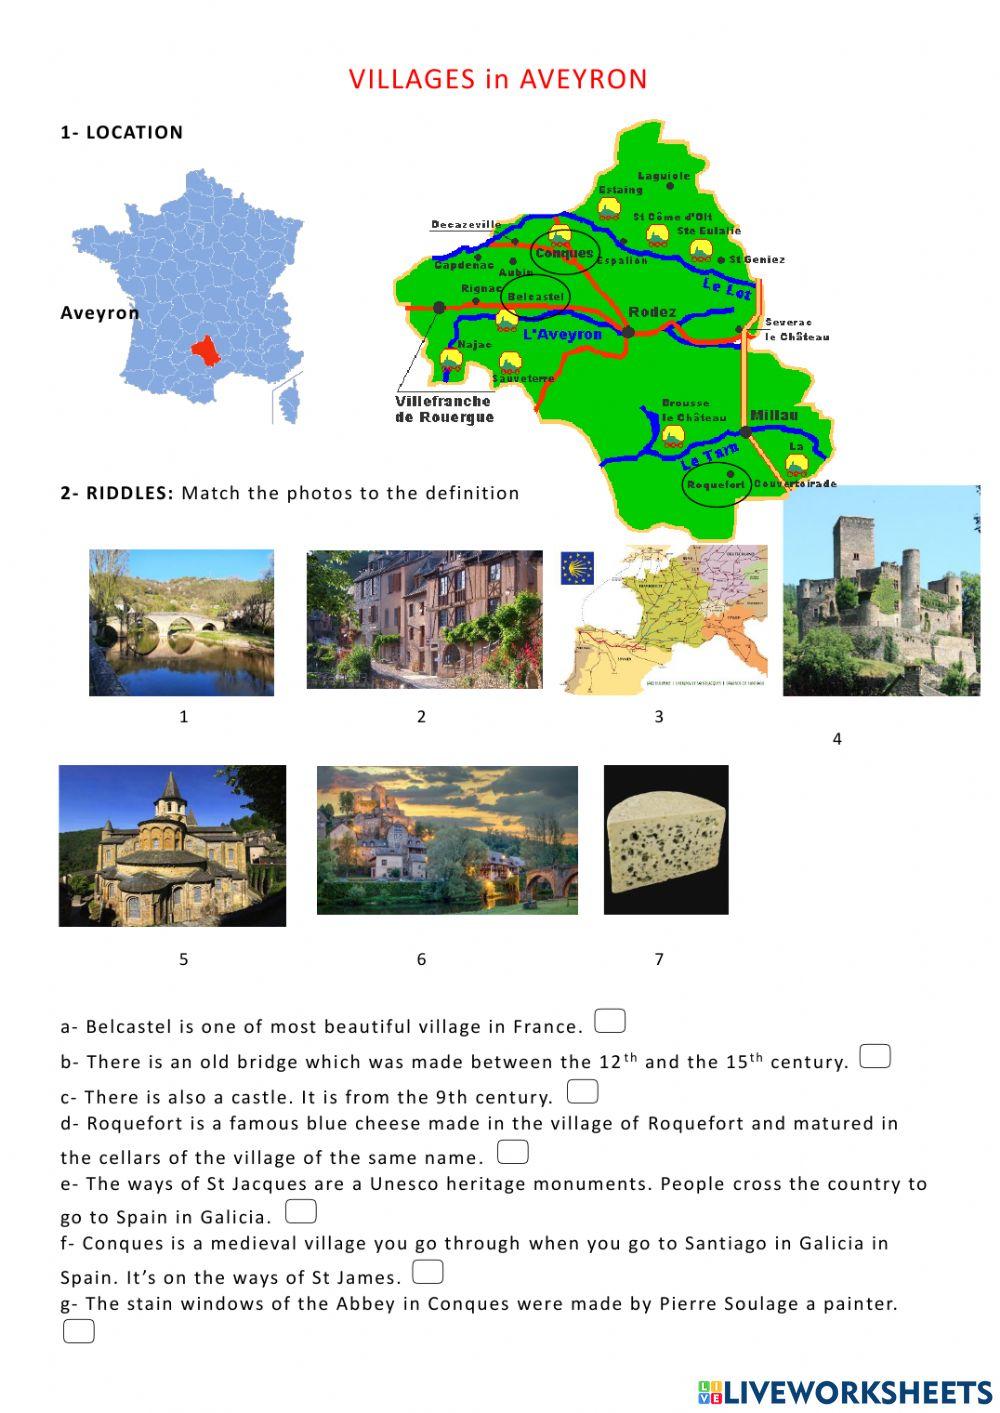 The ways of St James - Aveyron